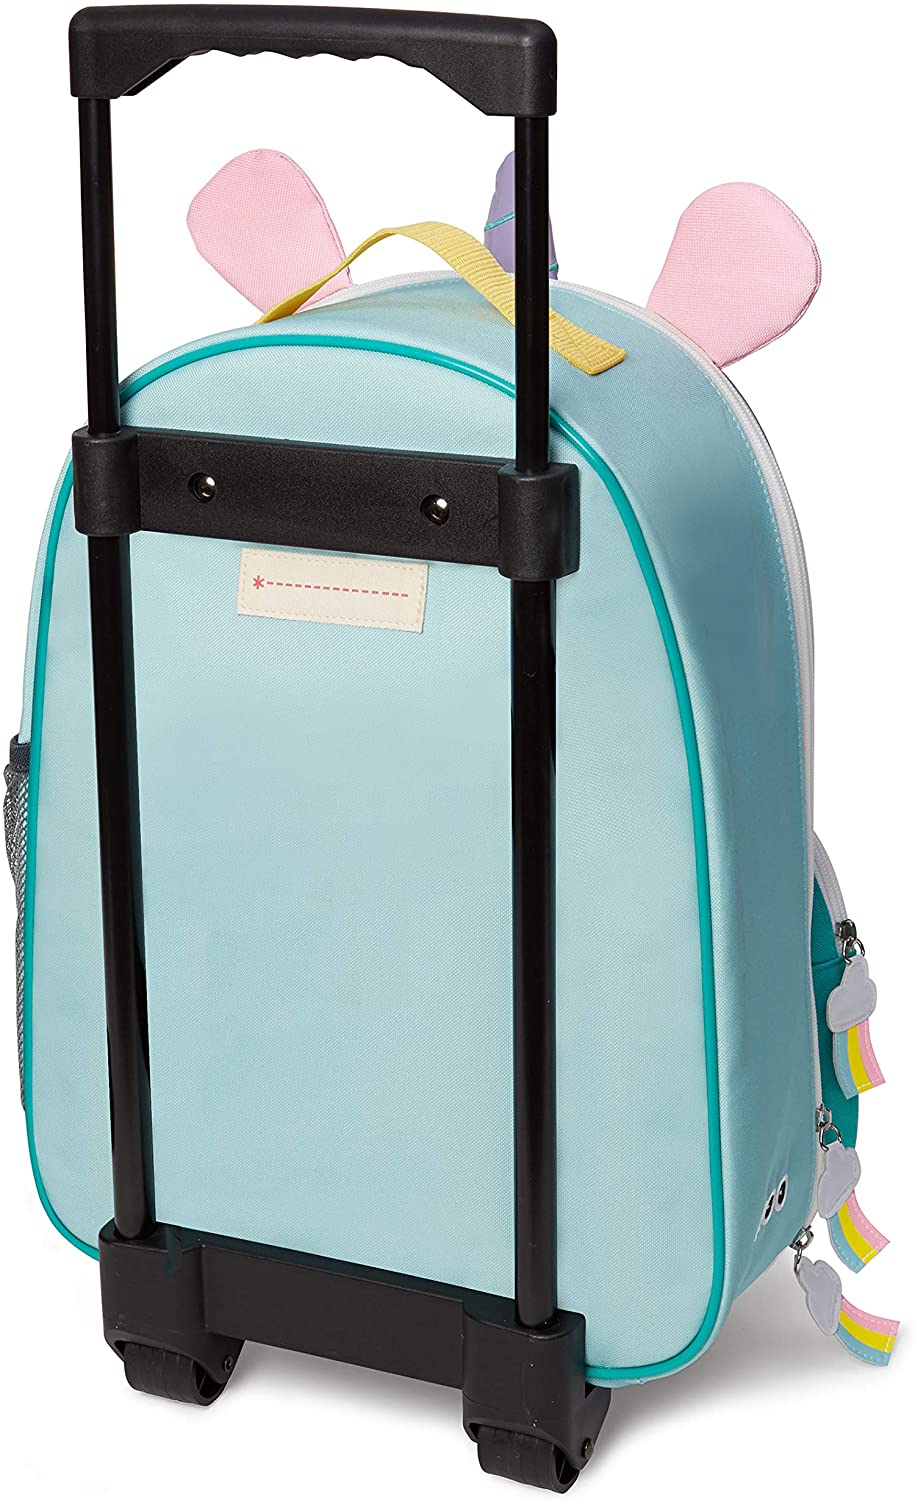 Luggage - Unicorn